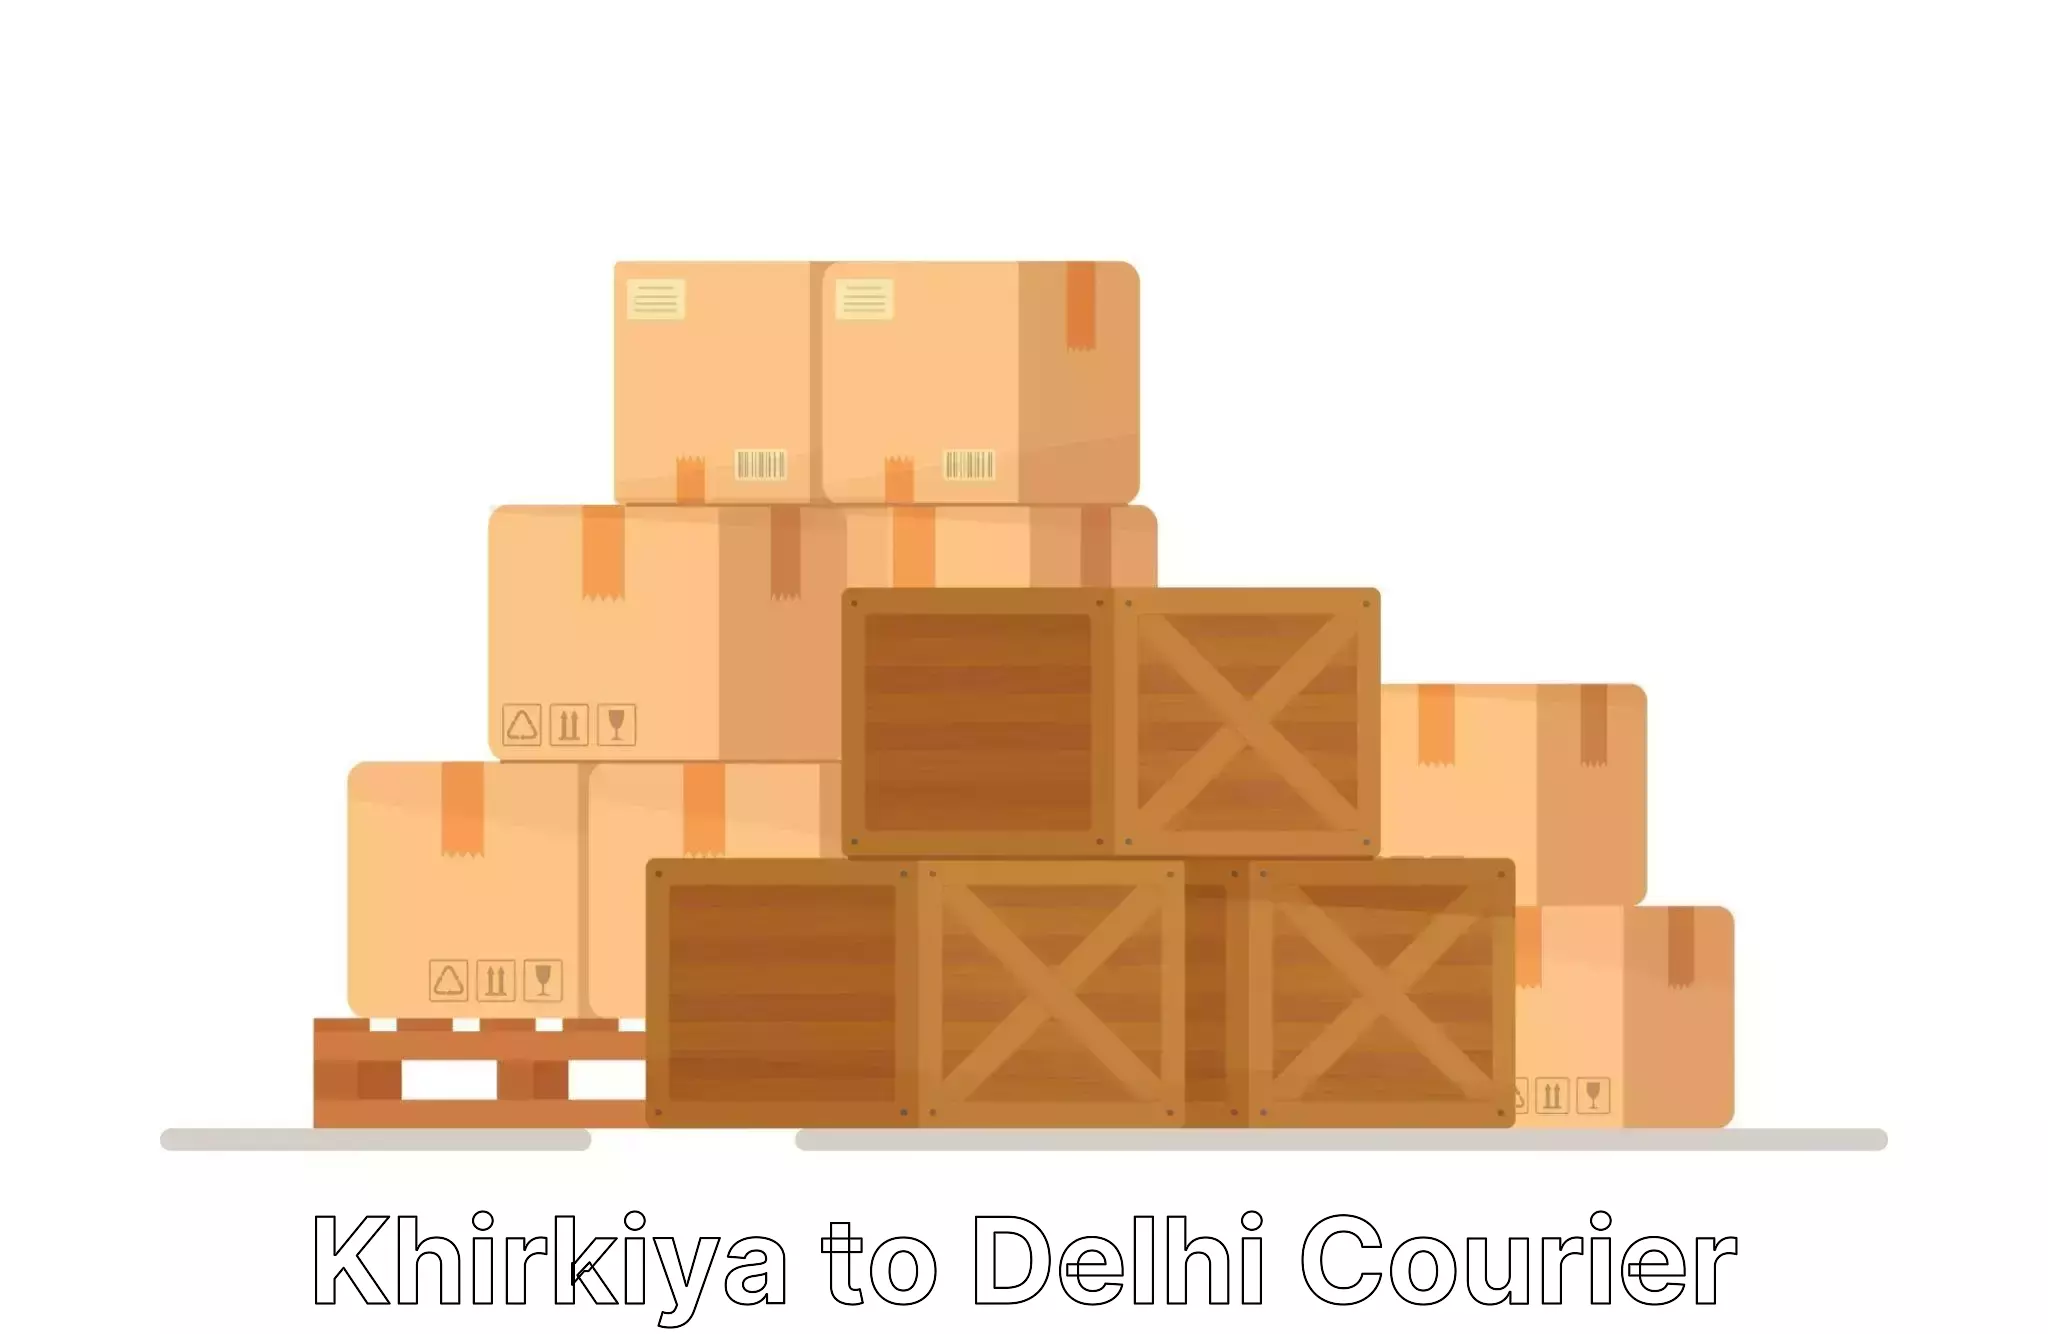 Budget-friendly moving services Khirkiya to Guru Gobind Singh Indraprastha University New Delhi